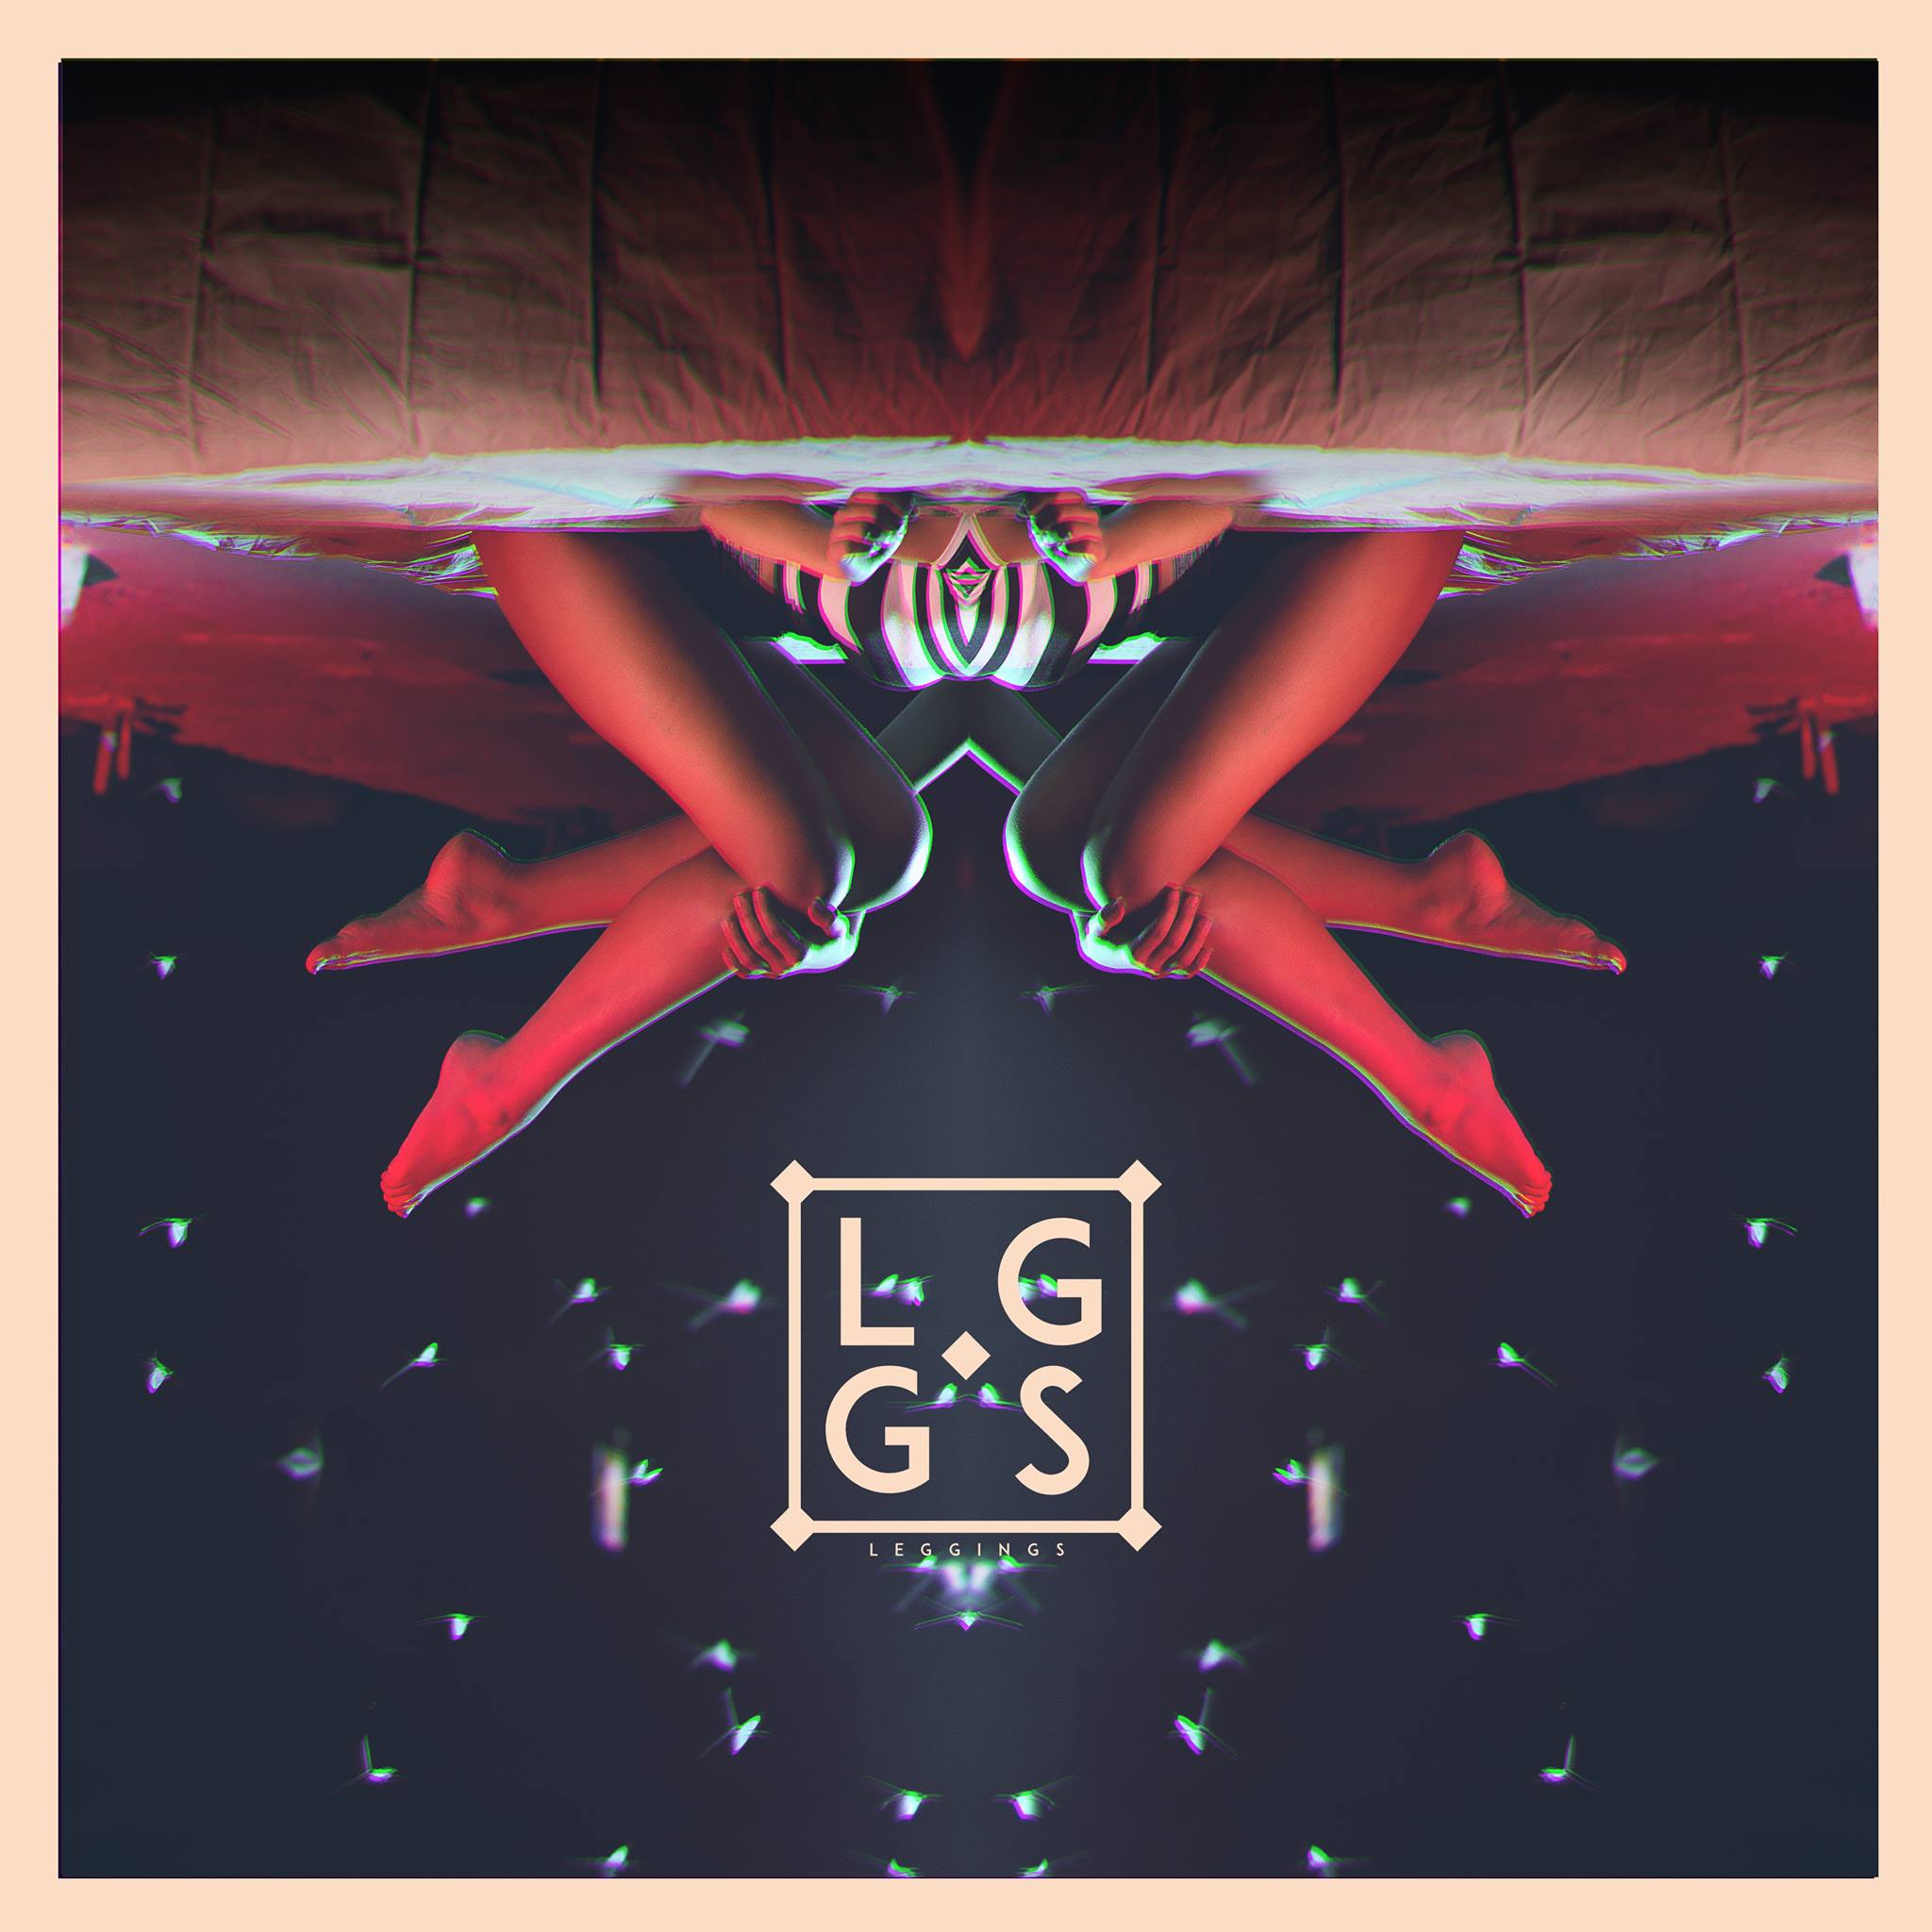 Critique d’album : LGGS – Leggings